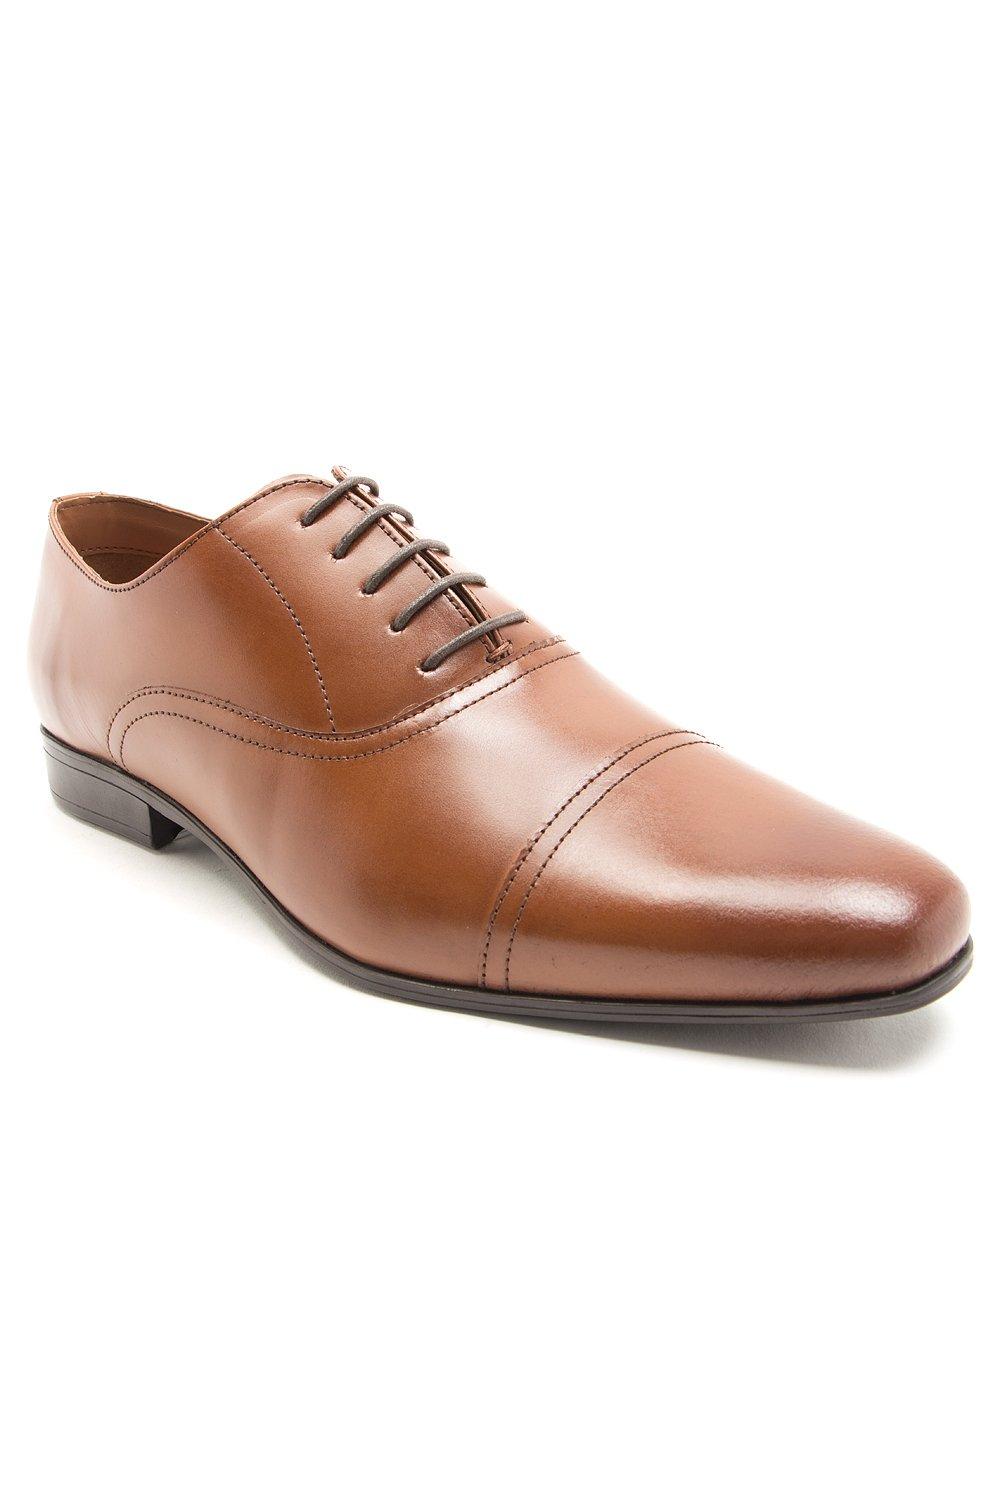 Классические оксфорды Mellor на шнуровке Официальная обувь Thomas Crick, коричневый туфли мужские классические кожаные деловые на шнуровке заостренный носок британская мода роскошные ручная работа весна лето 2021